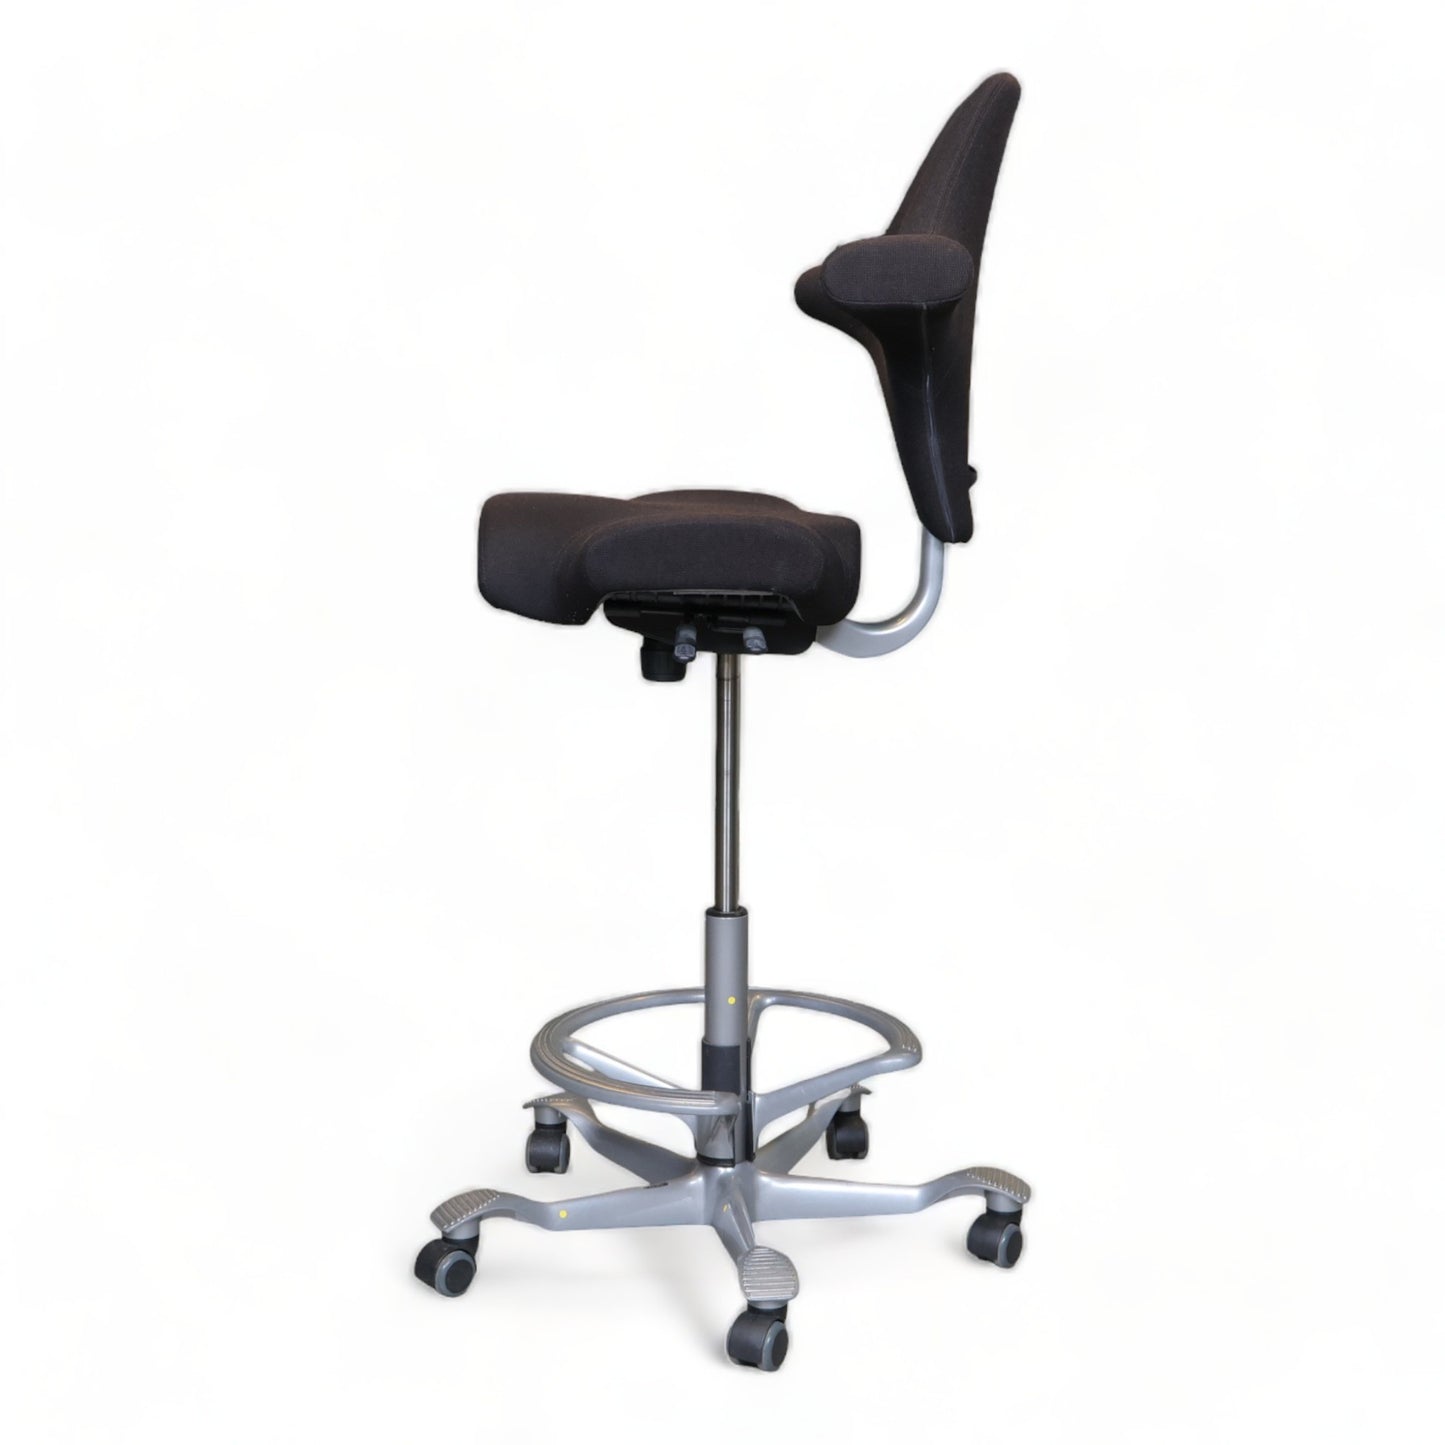 Nyrenset | Håg Capisco sort kontorstol med sadelsete og fotring